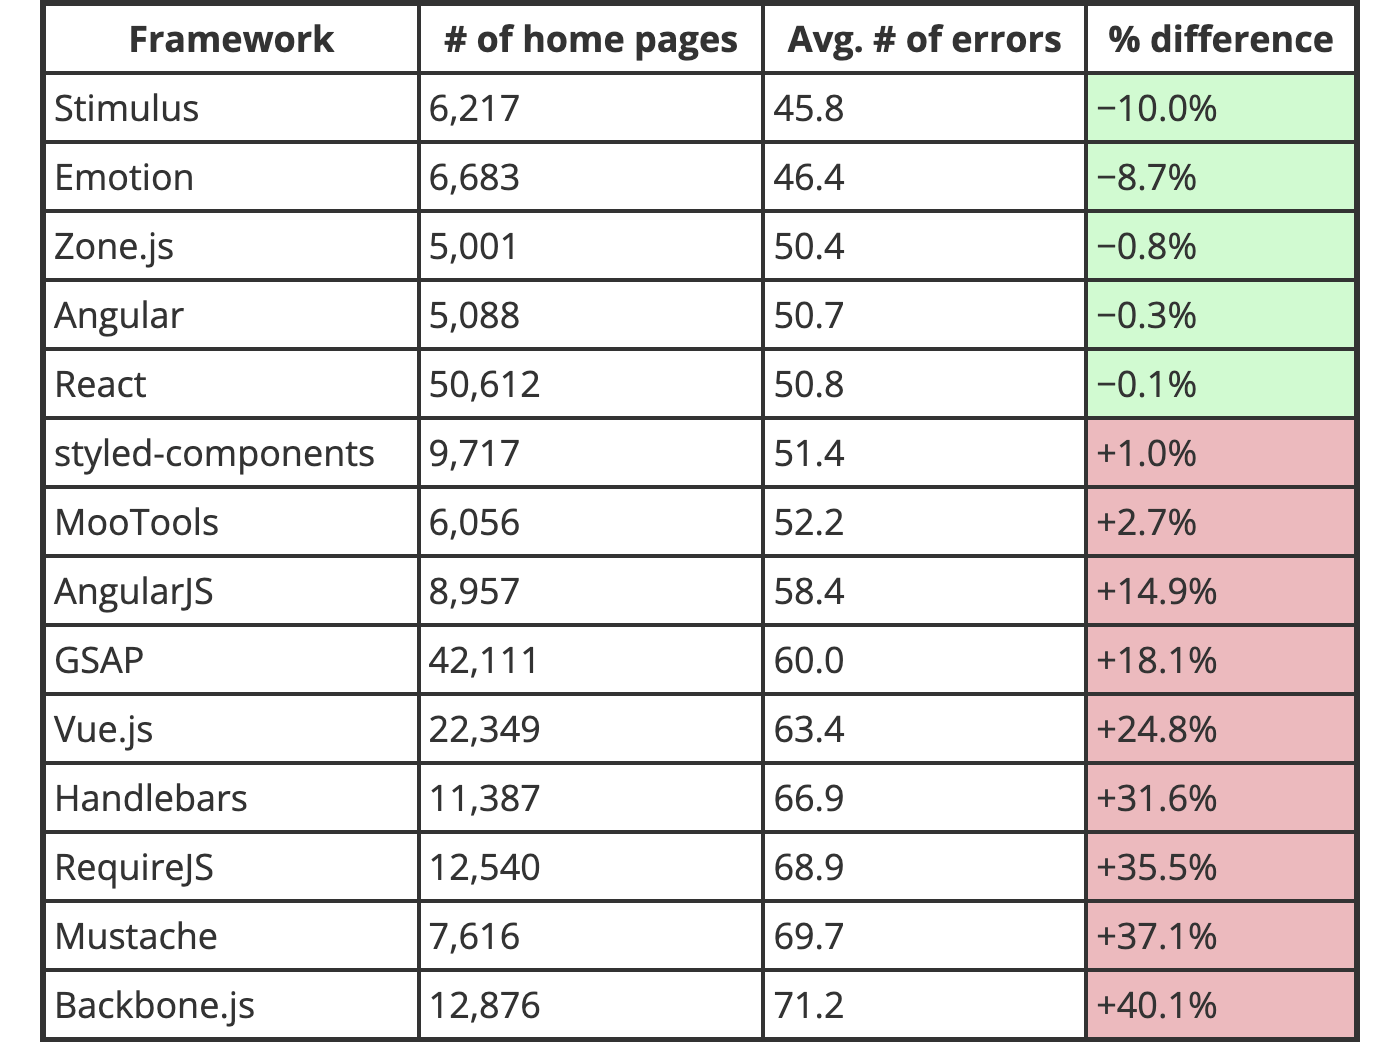 The WebAIM Million 2022 の JavaScript フレームワークの結果。Vue.js でのアクセシビリティ対応は平均より 24.8% も低い結果が出ている